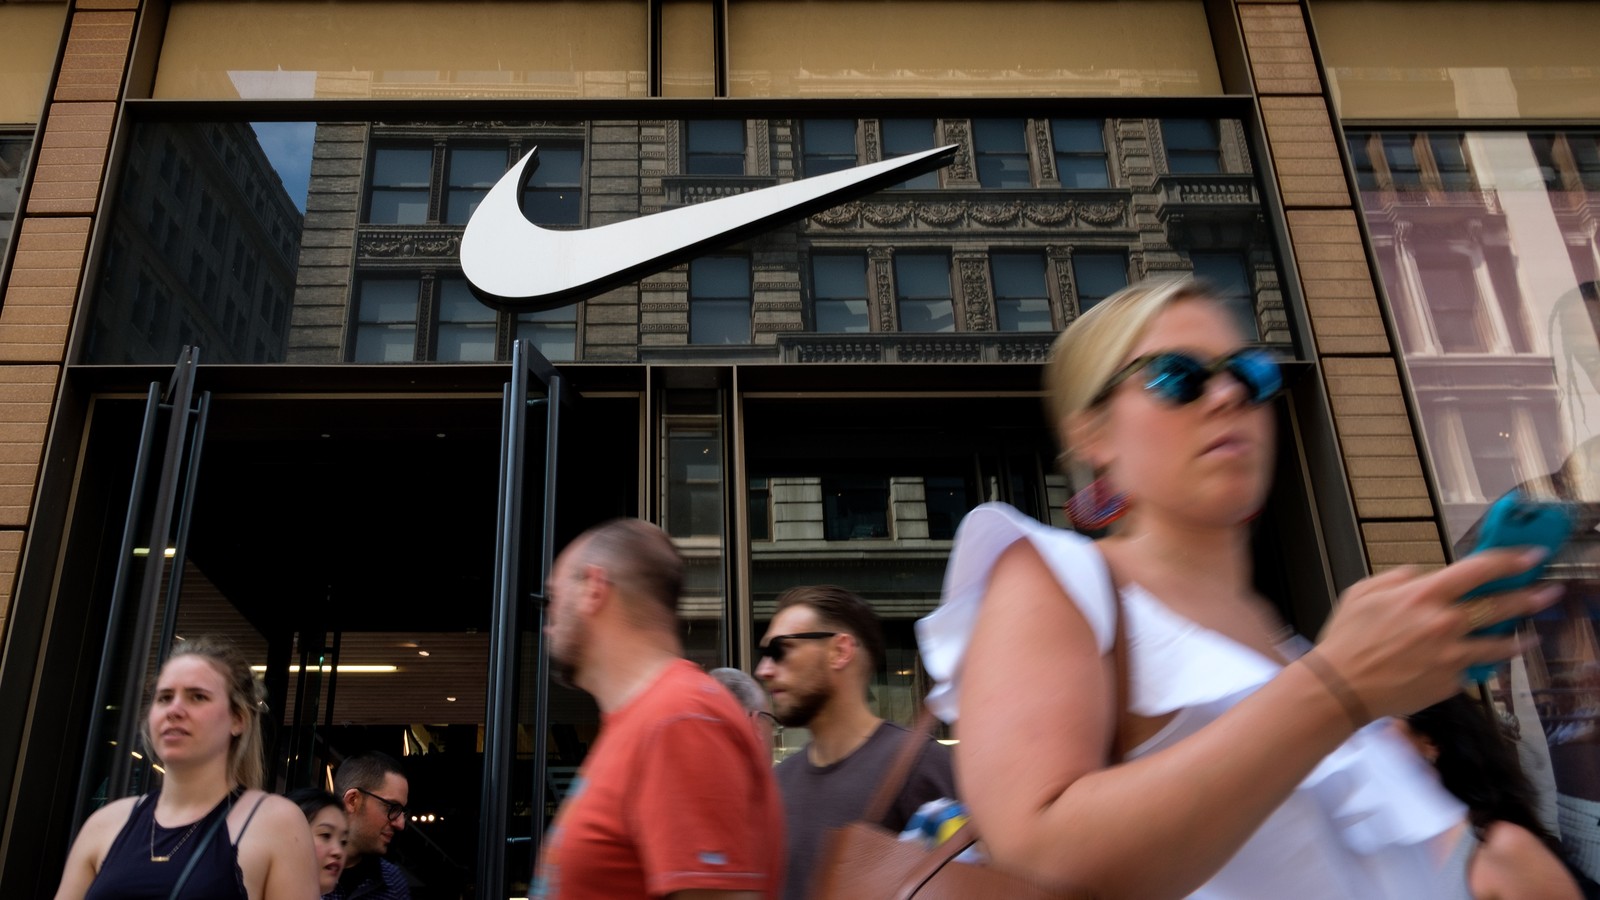 con las manos en la masa Huelga Inyección Why Is Nike Working With Colin Kaepernick? - The Atlantic